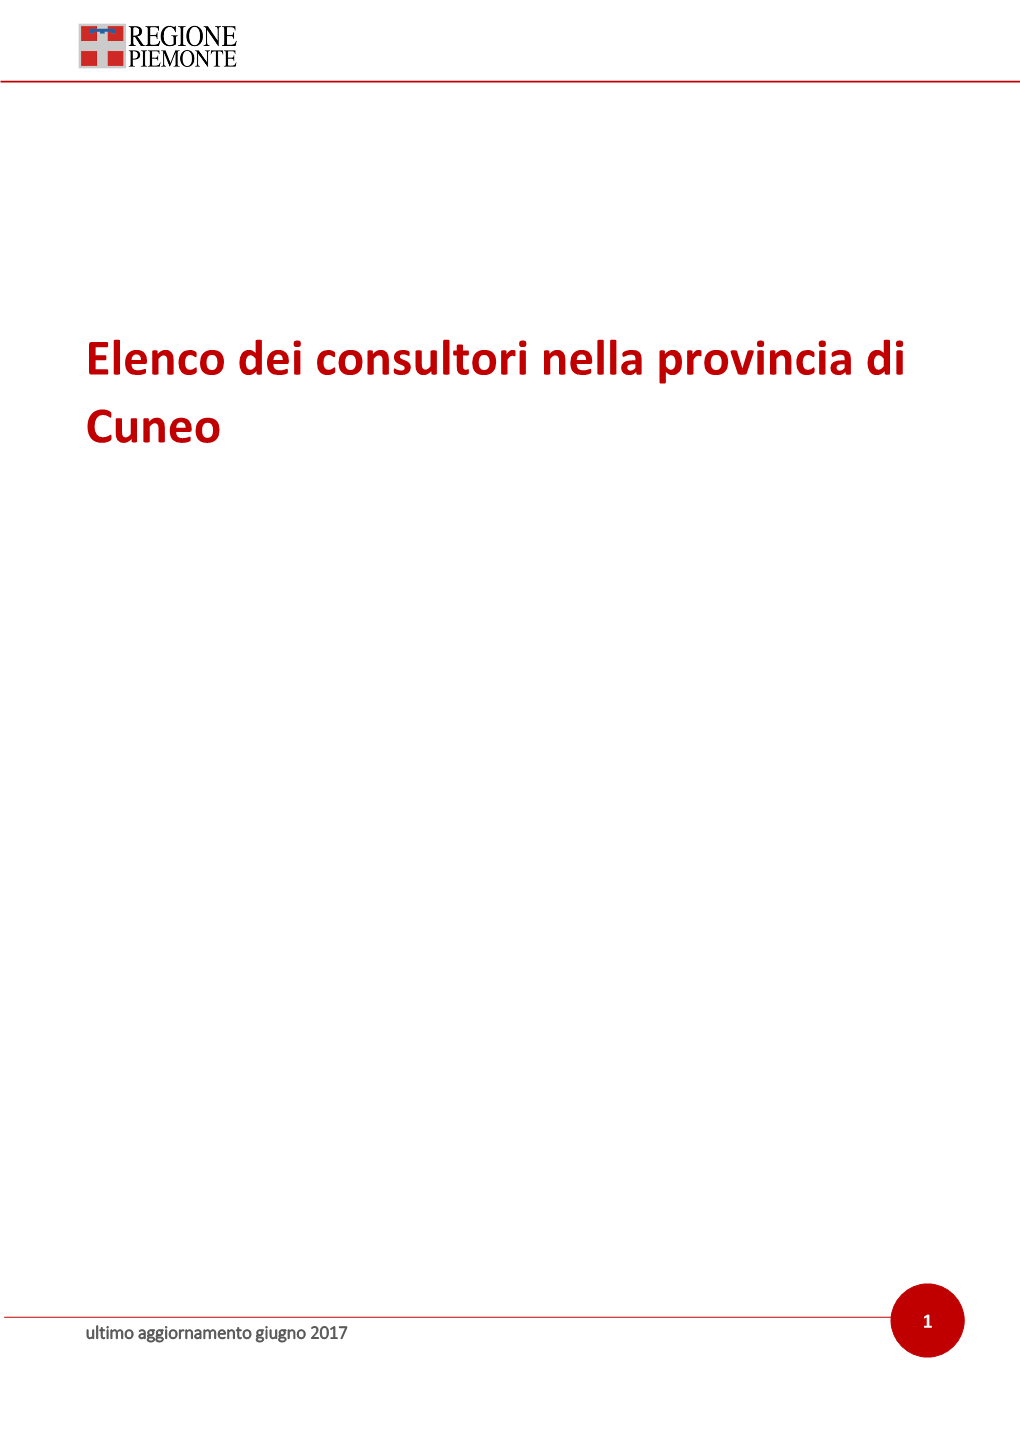 Elenco Dei Consultori Nella Provincia Di Cuneo